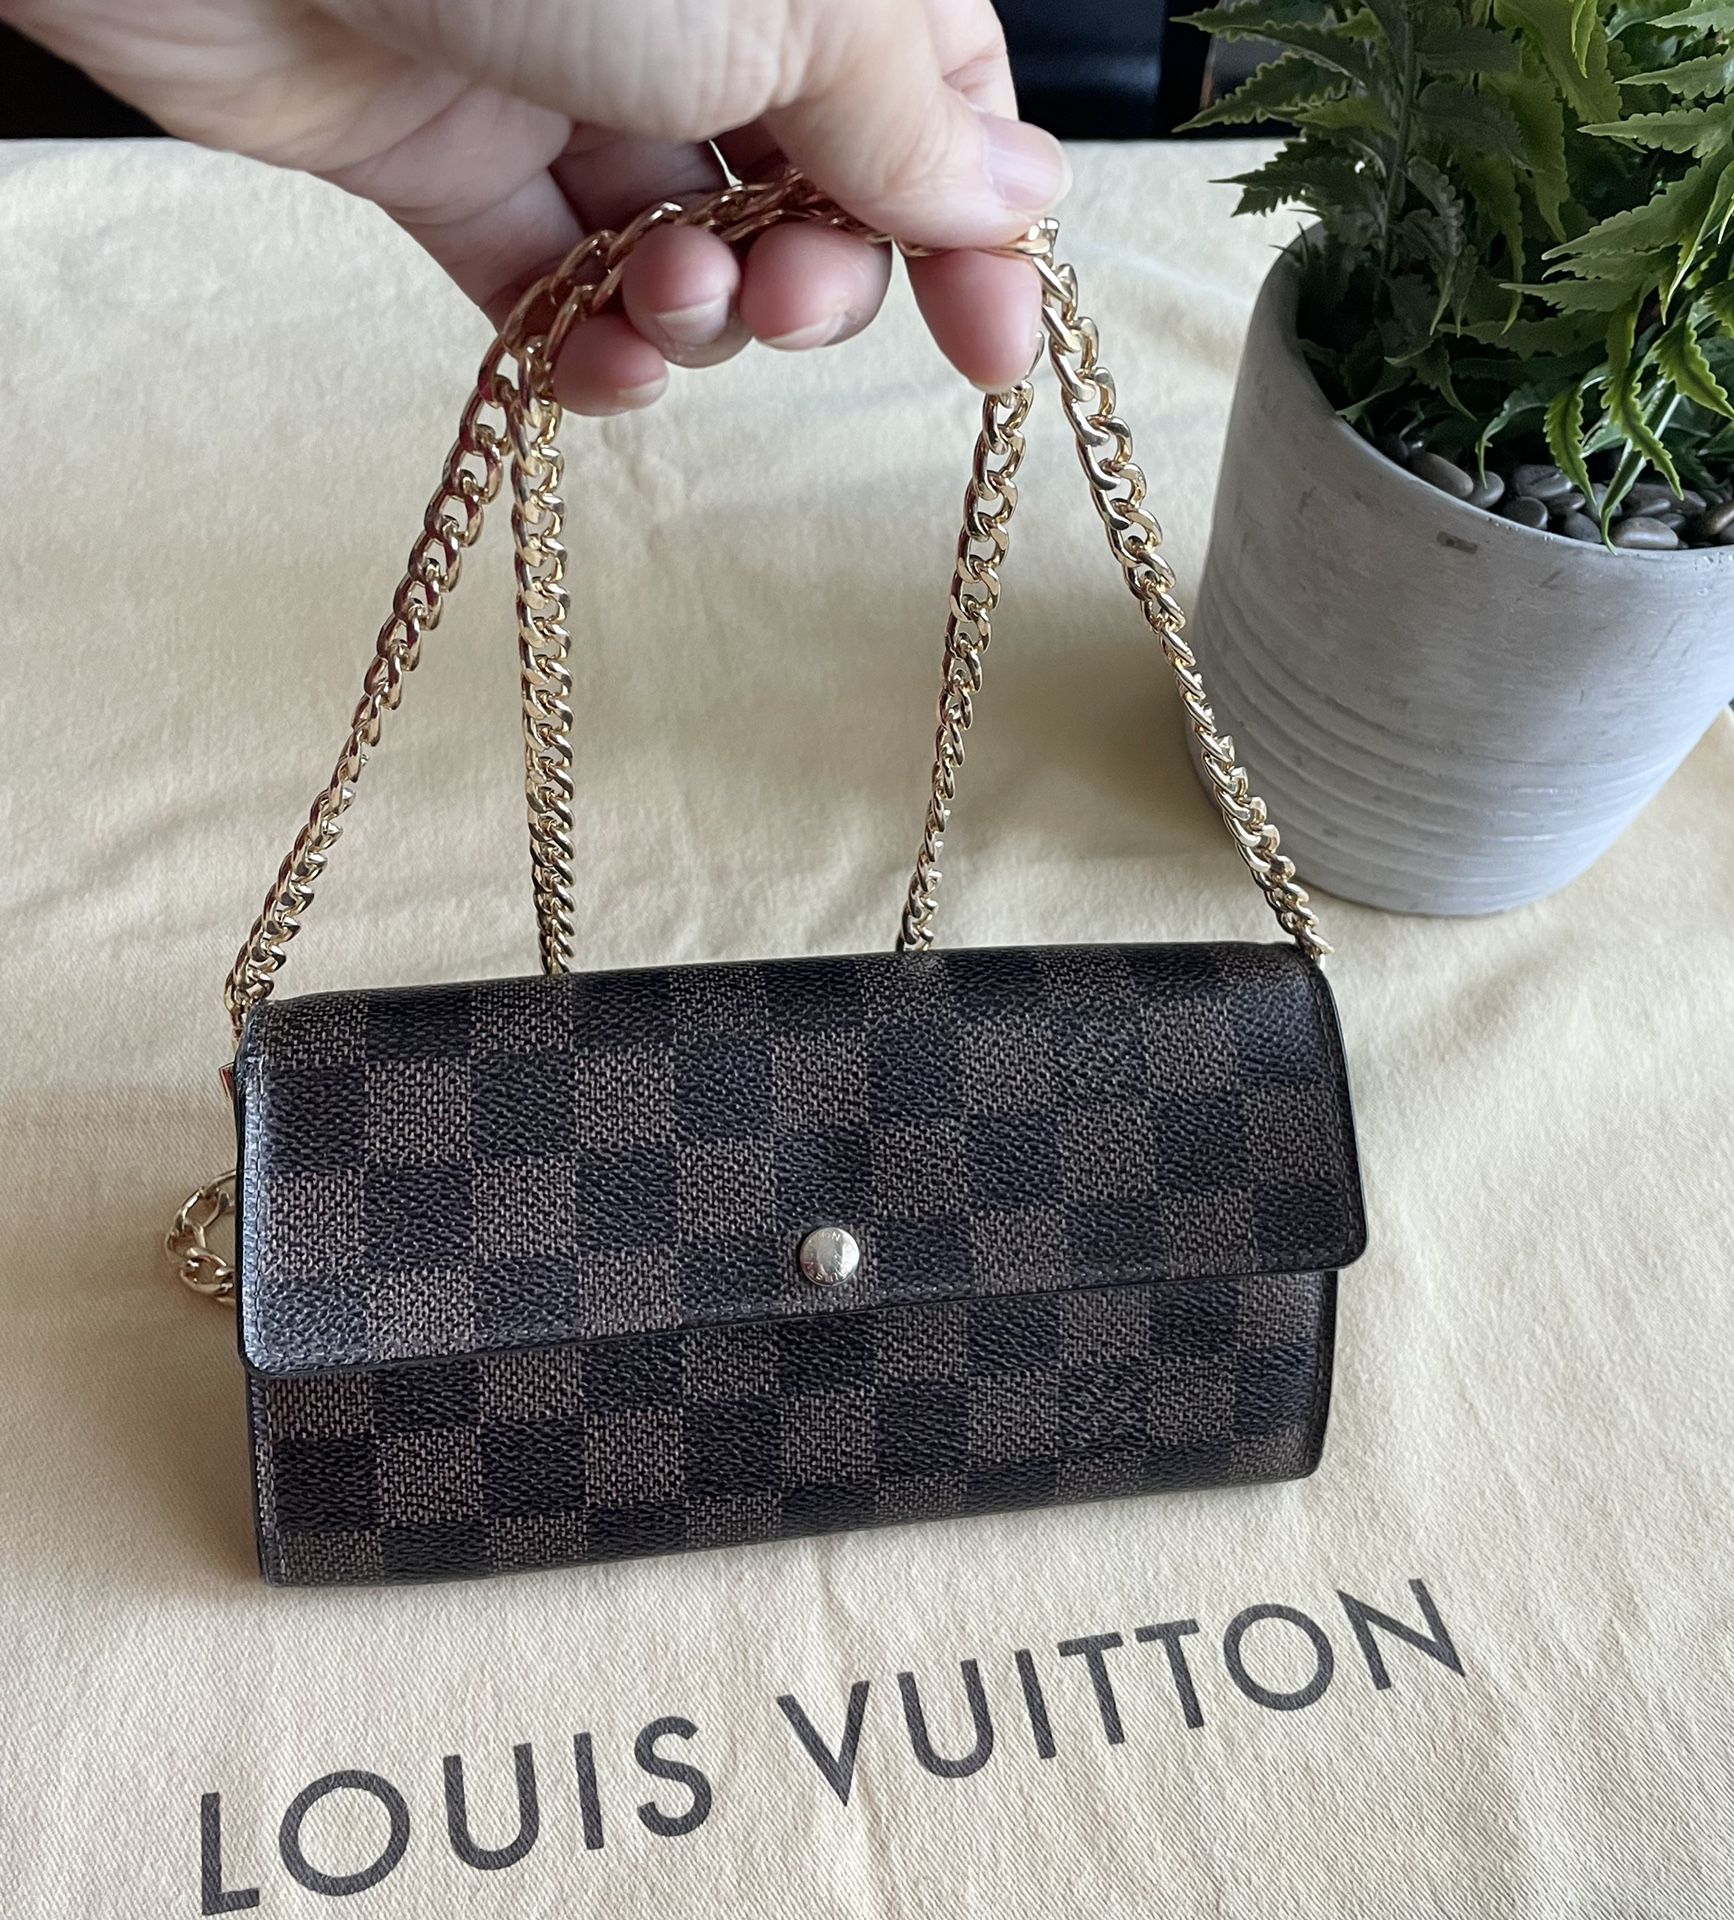 Authentic Louis Vuitton Damier Long Wallet W/Chain